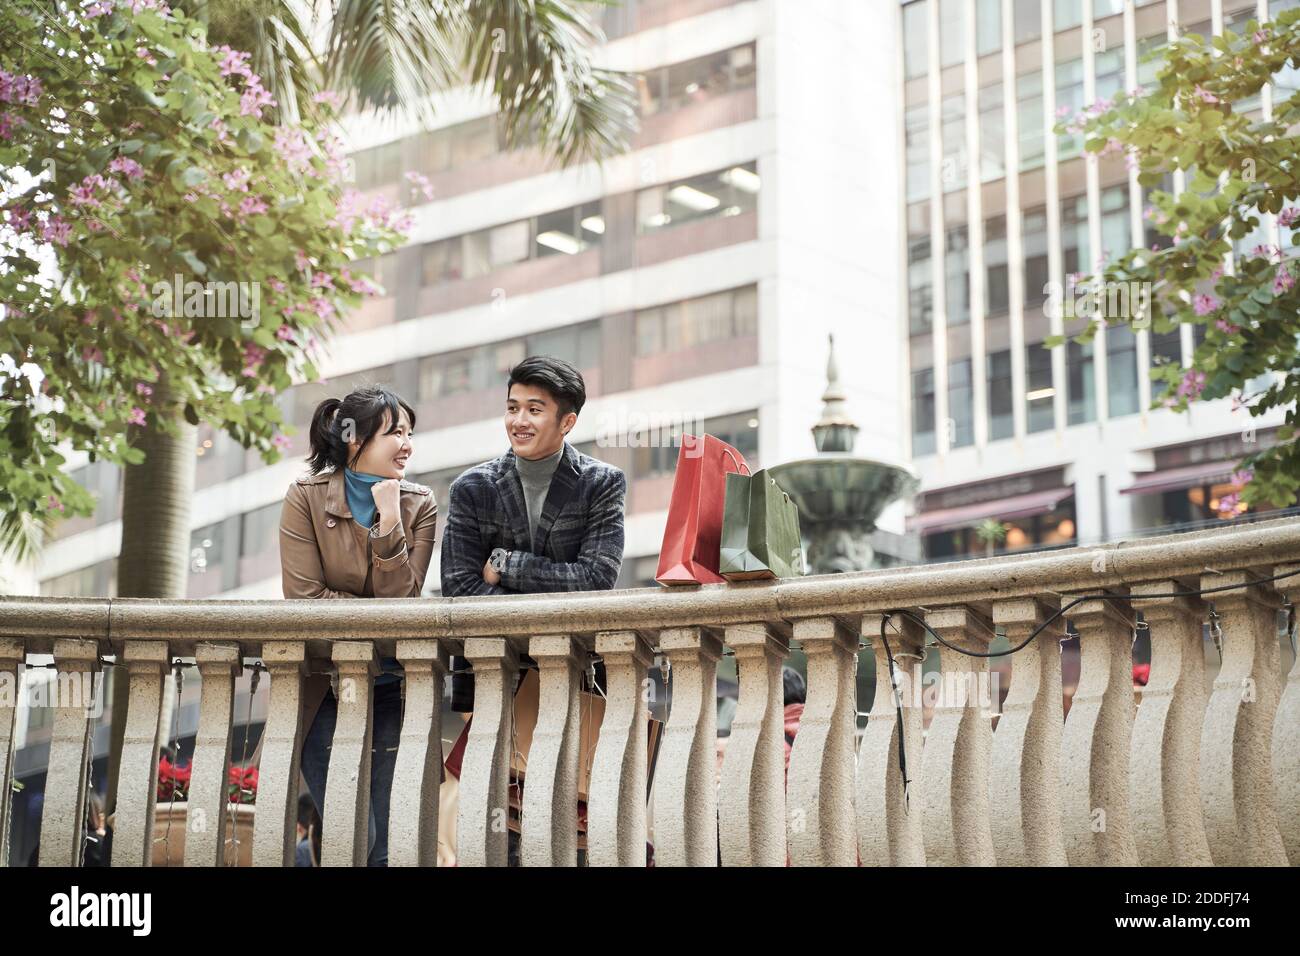 un jeune couple asiatique heureux prend une pause pour discuter en parlant shopping dans la ville Banque D'Images